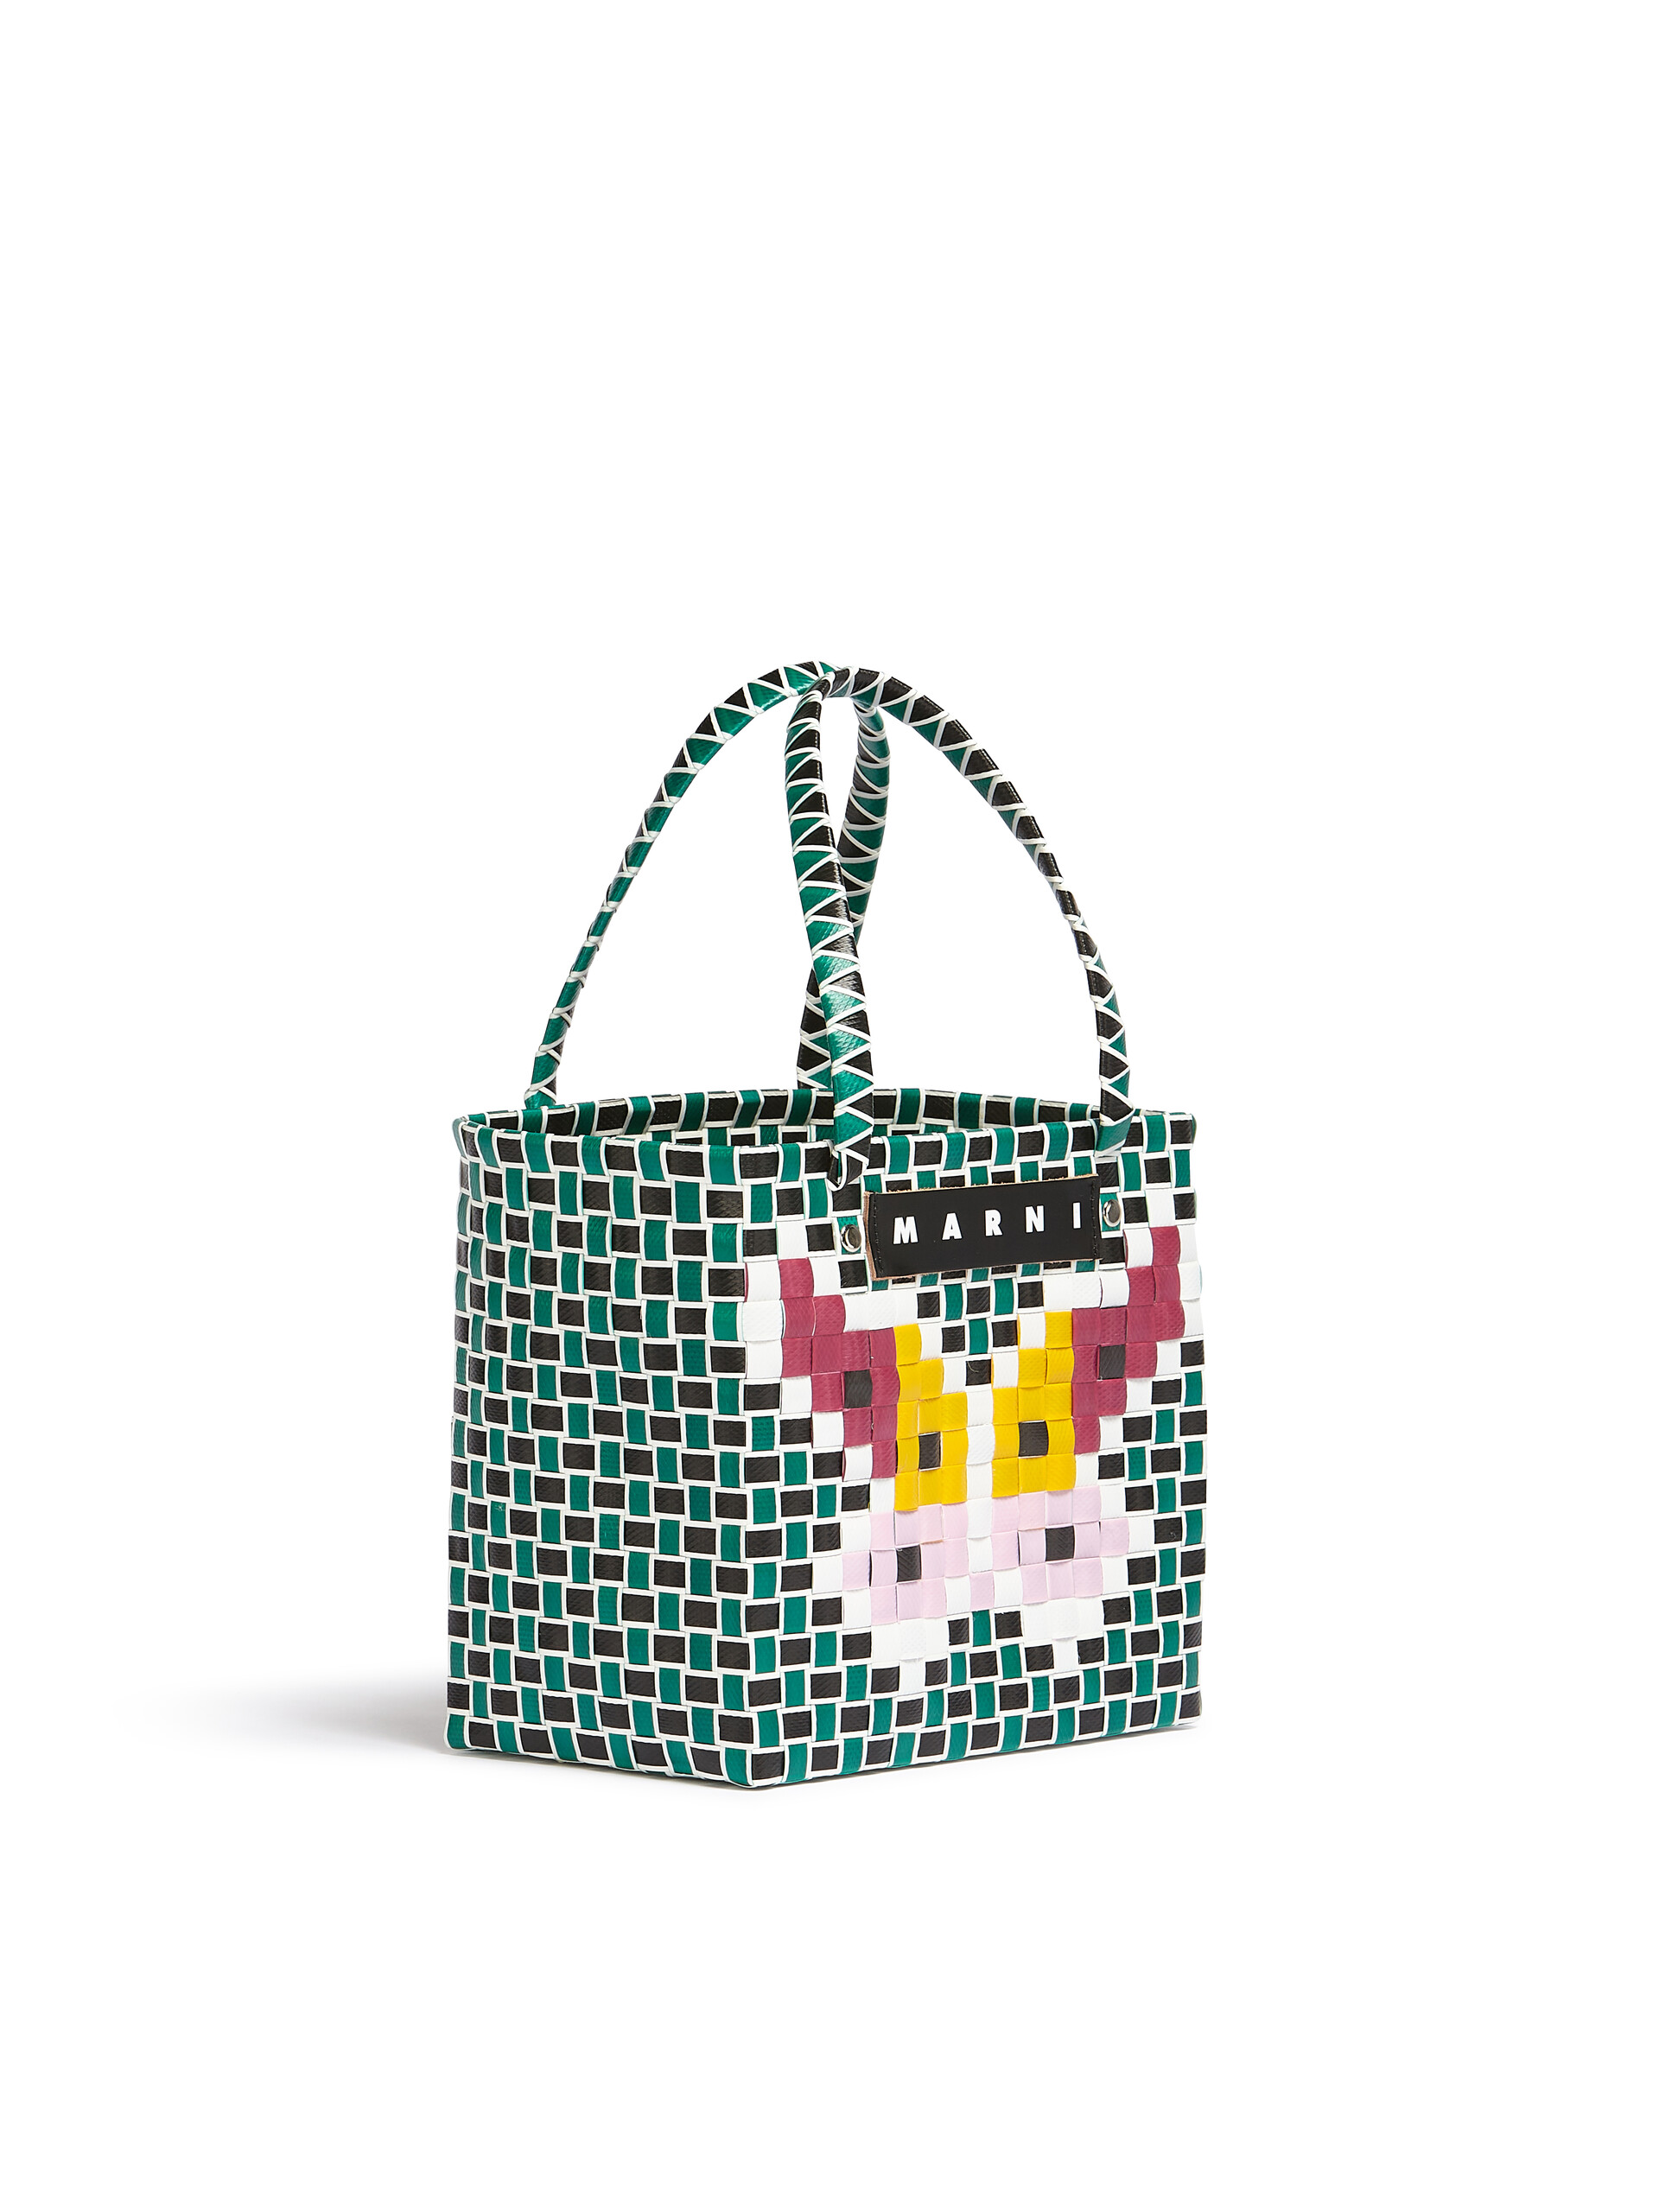 MARNI MARKET FLOWER MINI BASKET bag in green butterfly motif - Bags - Image 2